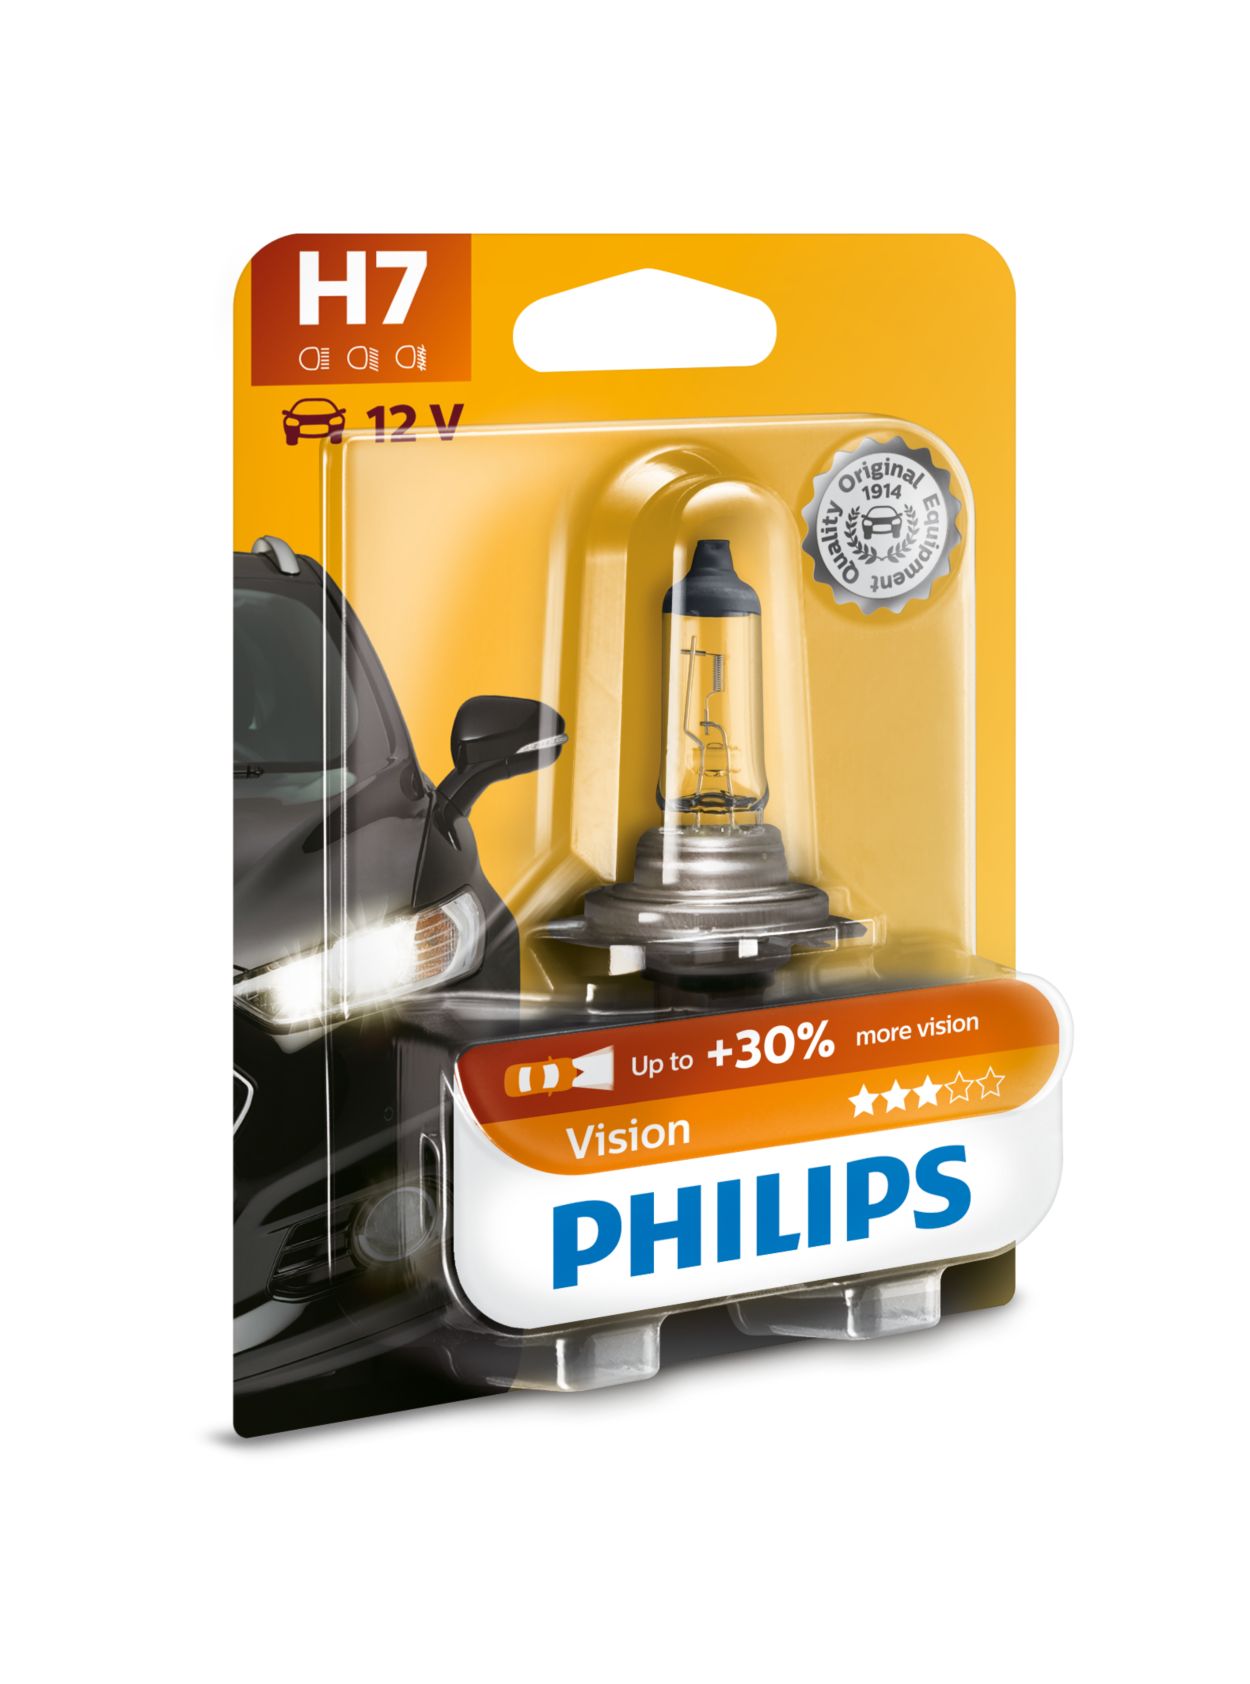 H7 Halogen Lampe Autolampe 12V 55W PX26d Scheinwerfer Lampe Ersat